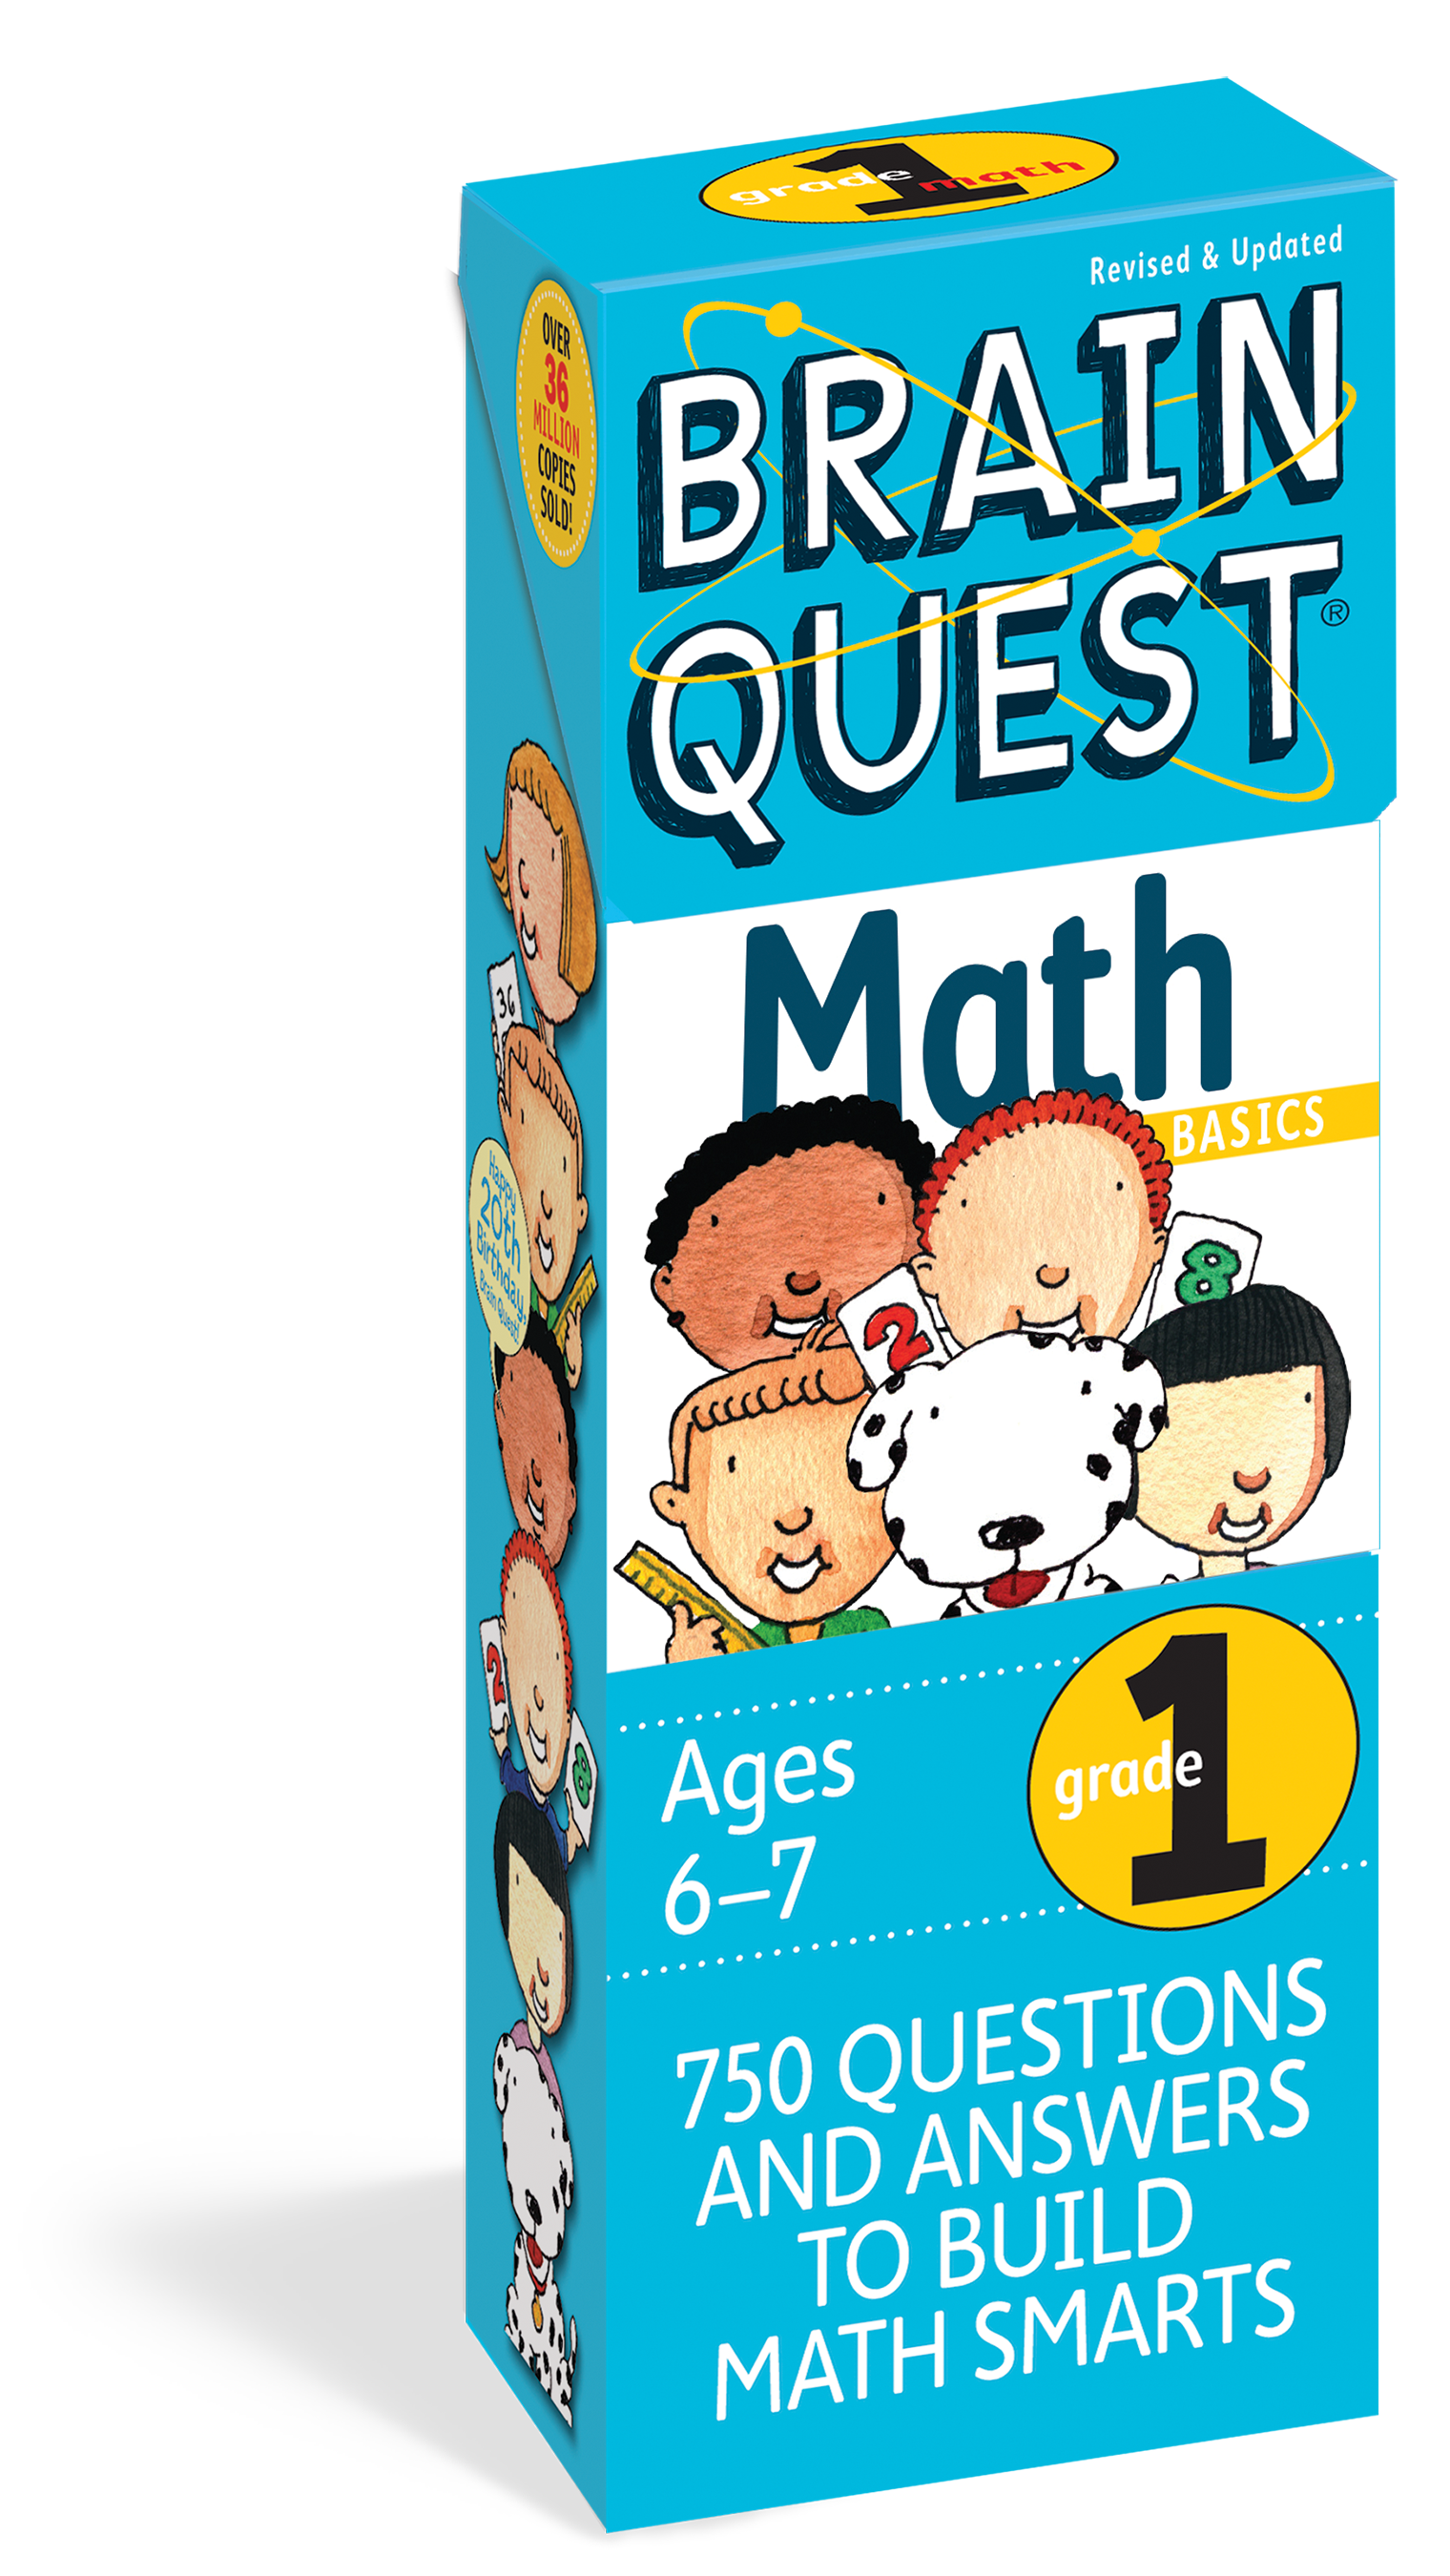 Brain Quest Grade 1 Math